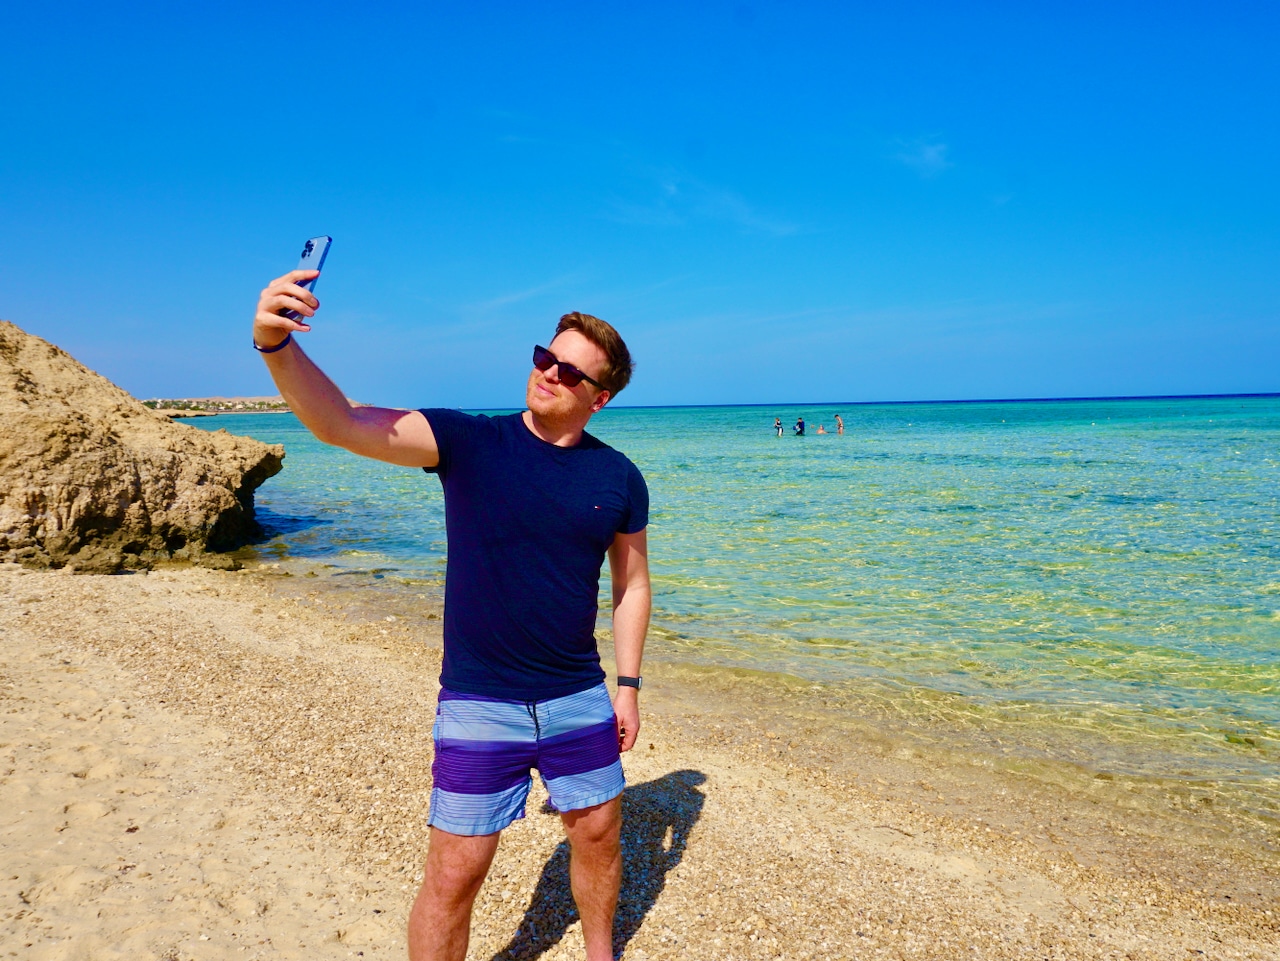 Viele Reisende nutzen ihre Smartphones zu vielfältigen Zwecken – etwa als Selfiekamera. Wir geben Euch viele wertvolle Digital Detox Tipps und Tricks und zeigen euch, wie auch Ihr in einem Offline-Urlaub Eure Lebensqualität verbessert und weniger aufs Handy schaut.